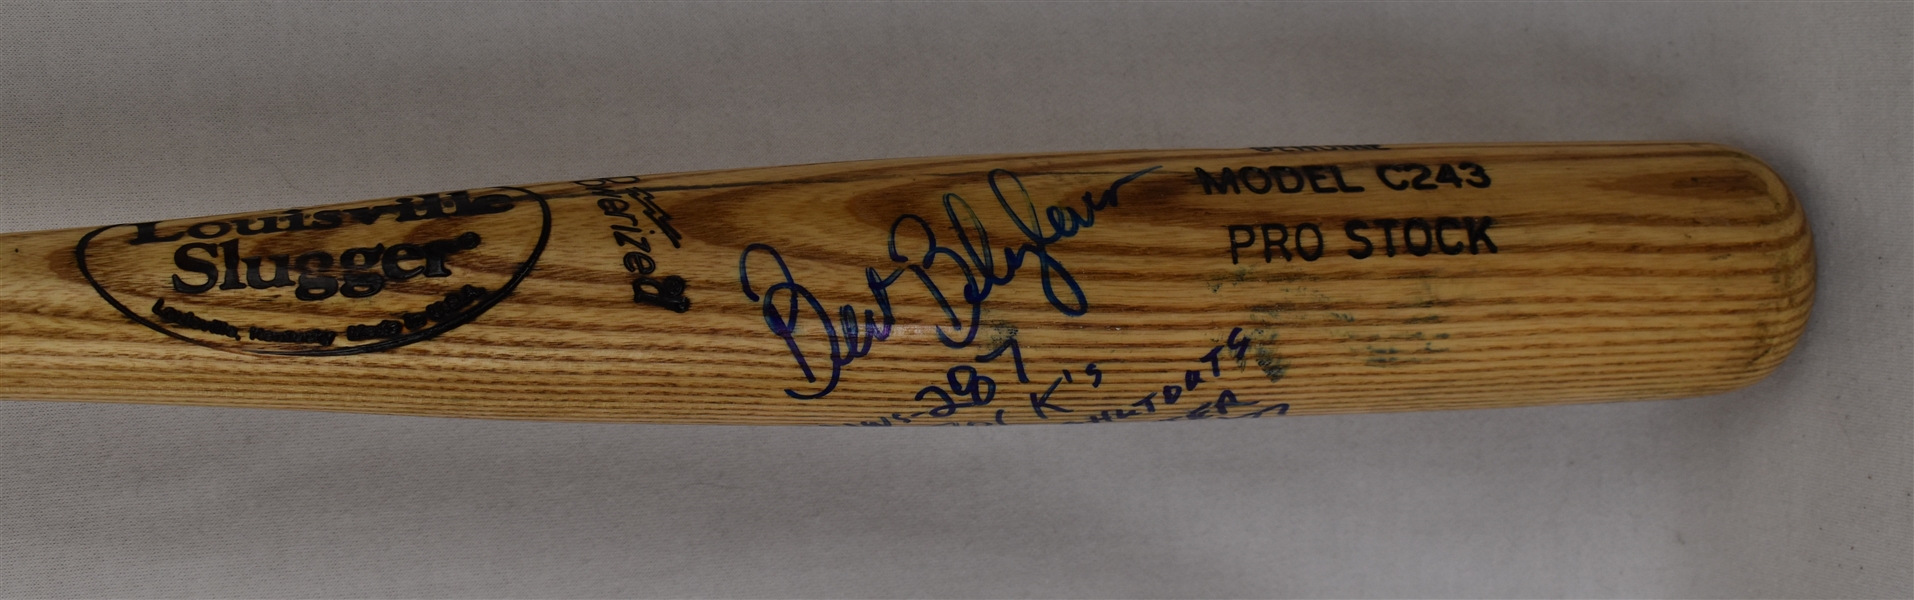 Bert Blyleven Autographed & Inscribed Bat